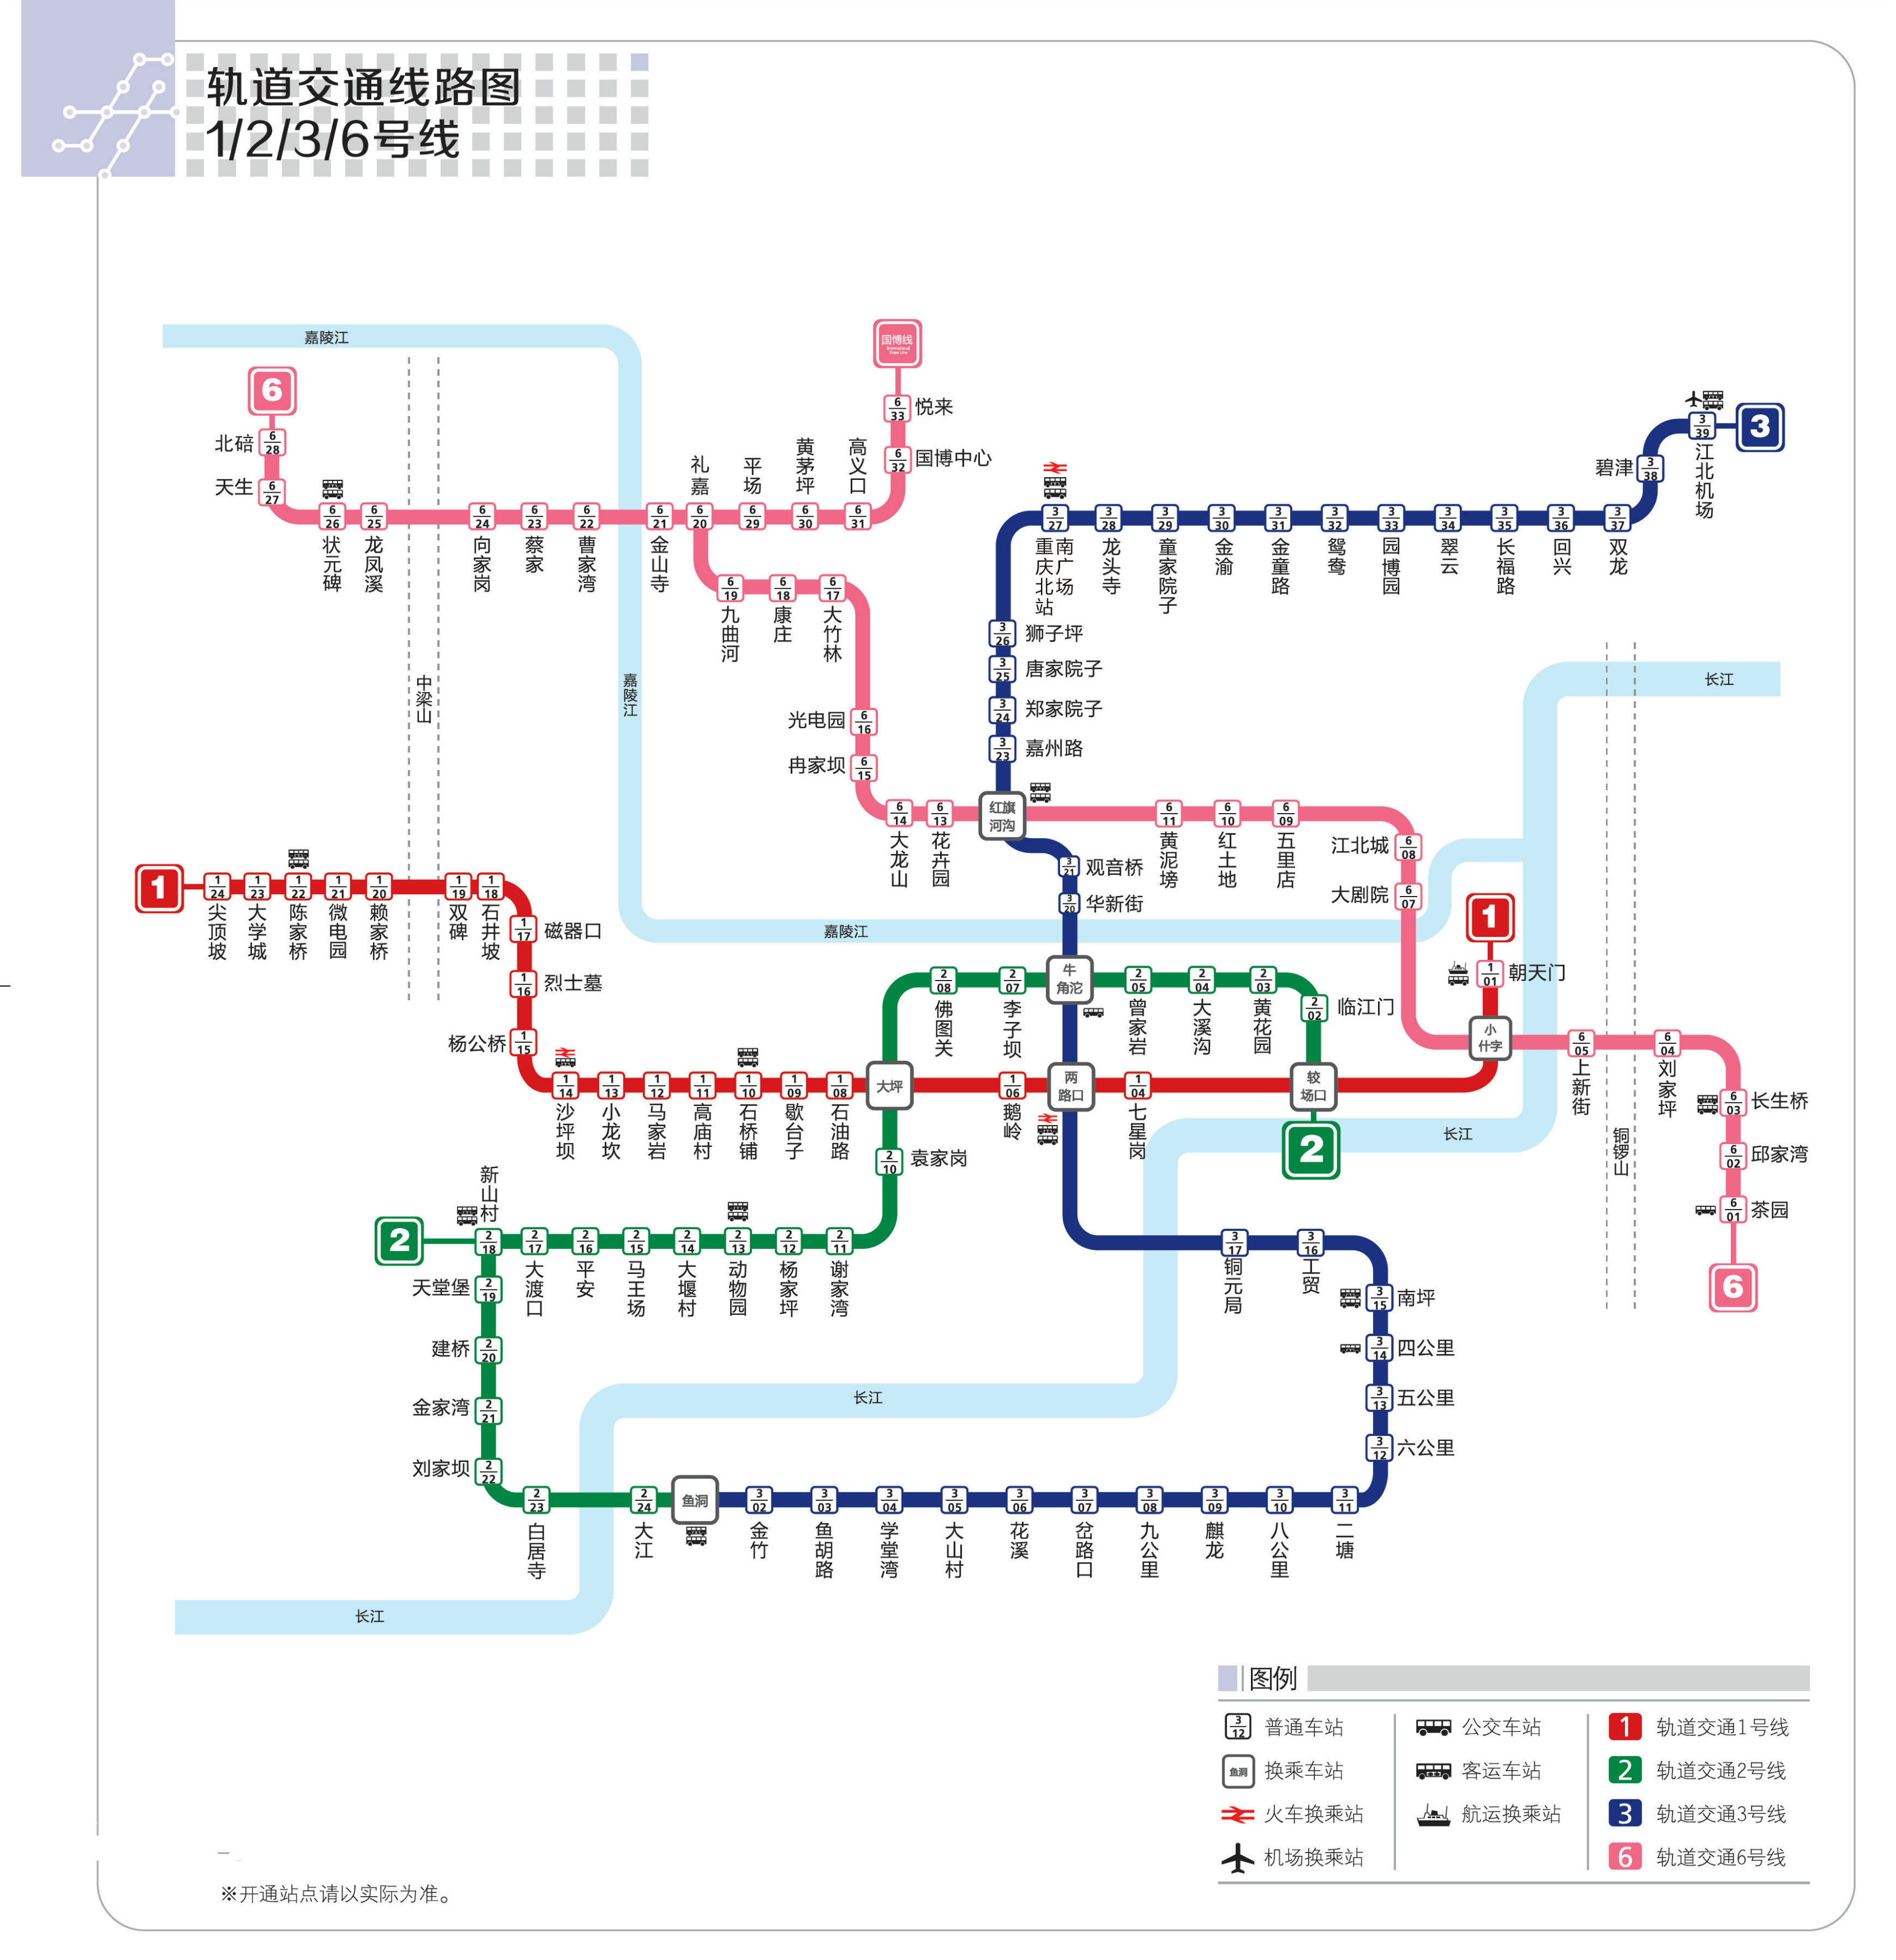 重庆地铁线路图 清晰图片